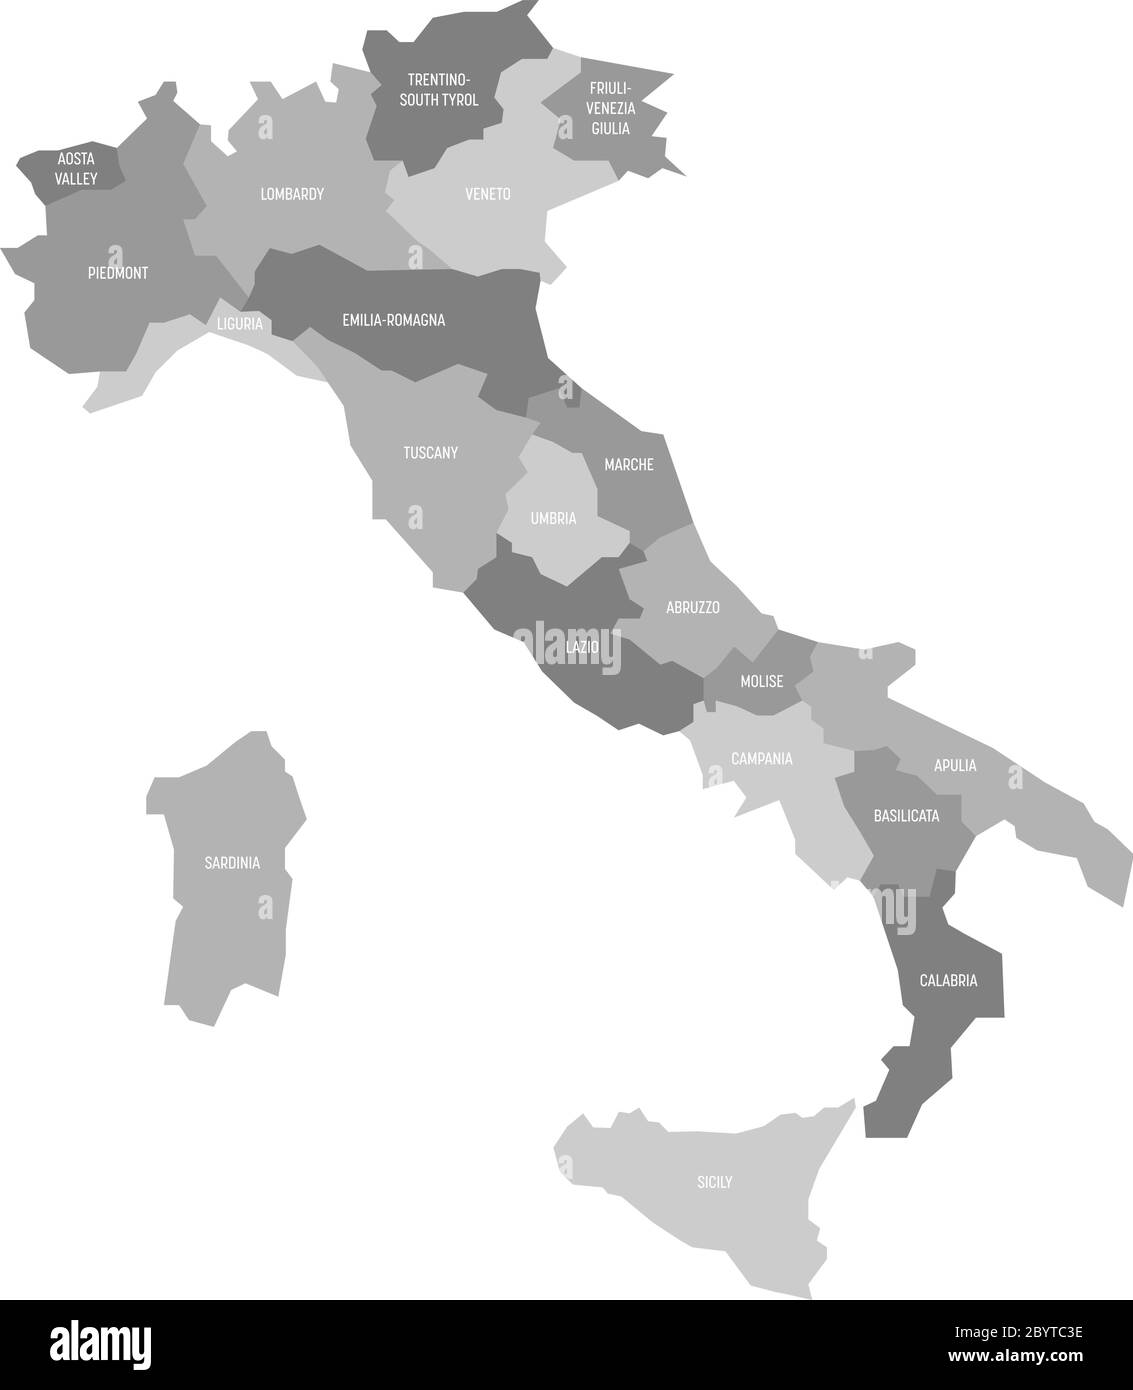 Karte von Italien in 20 Verwaltungsregionen in vier Grautönen unterteilt. Weiße Etiketten. Einfache flache Vektorgrafik. Stock Vektor